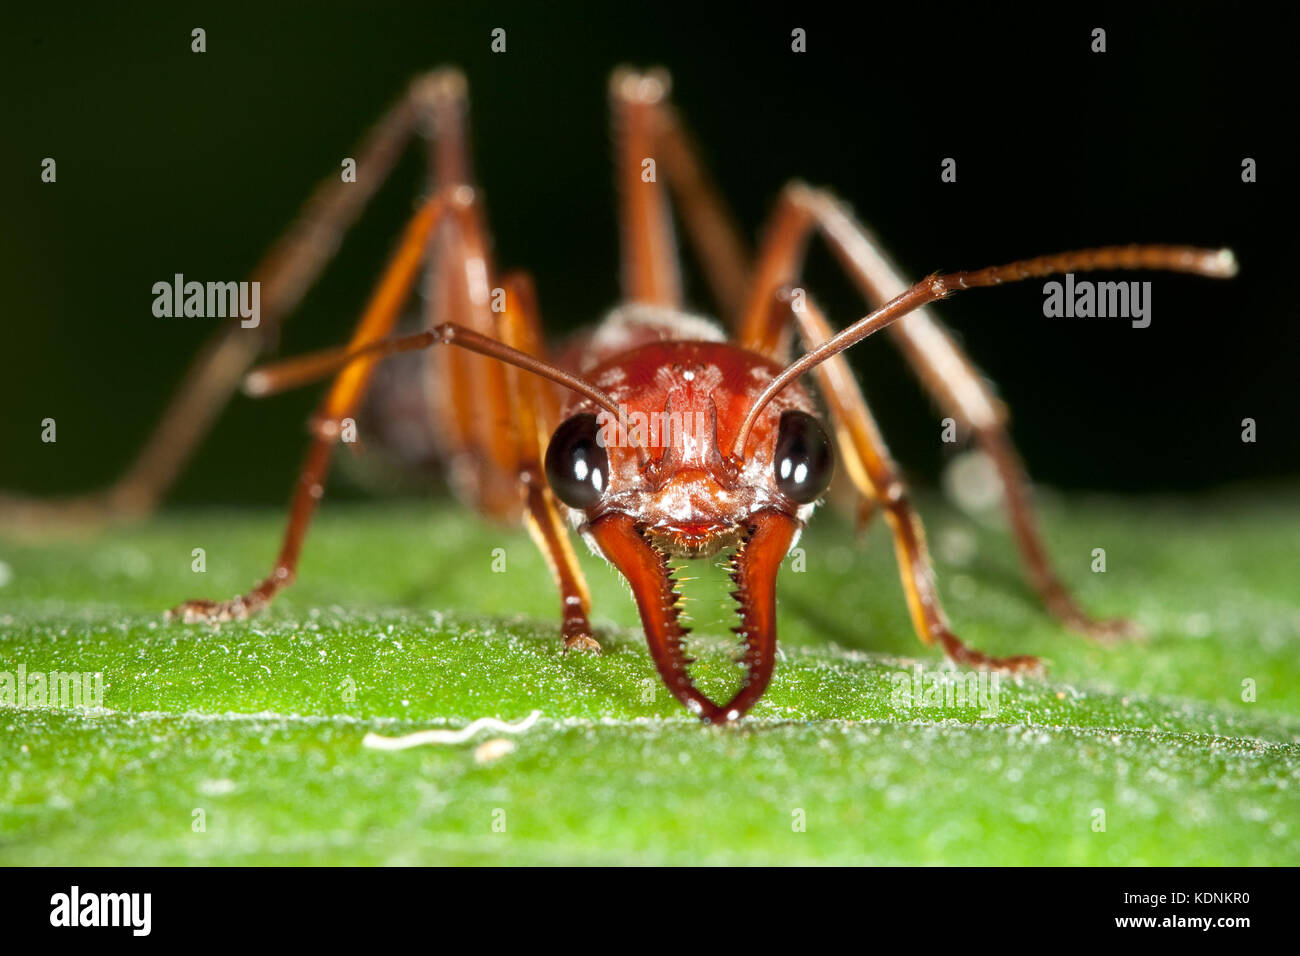 Bulldog marrone ant (myrmecia brevinoda) in posizione difensiva sulla foglia. hopkins creek. Nuovo Galles del Sud Australia. Foto Stock